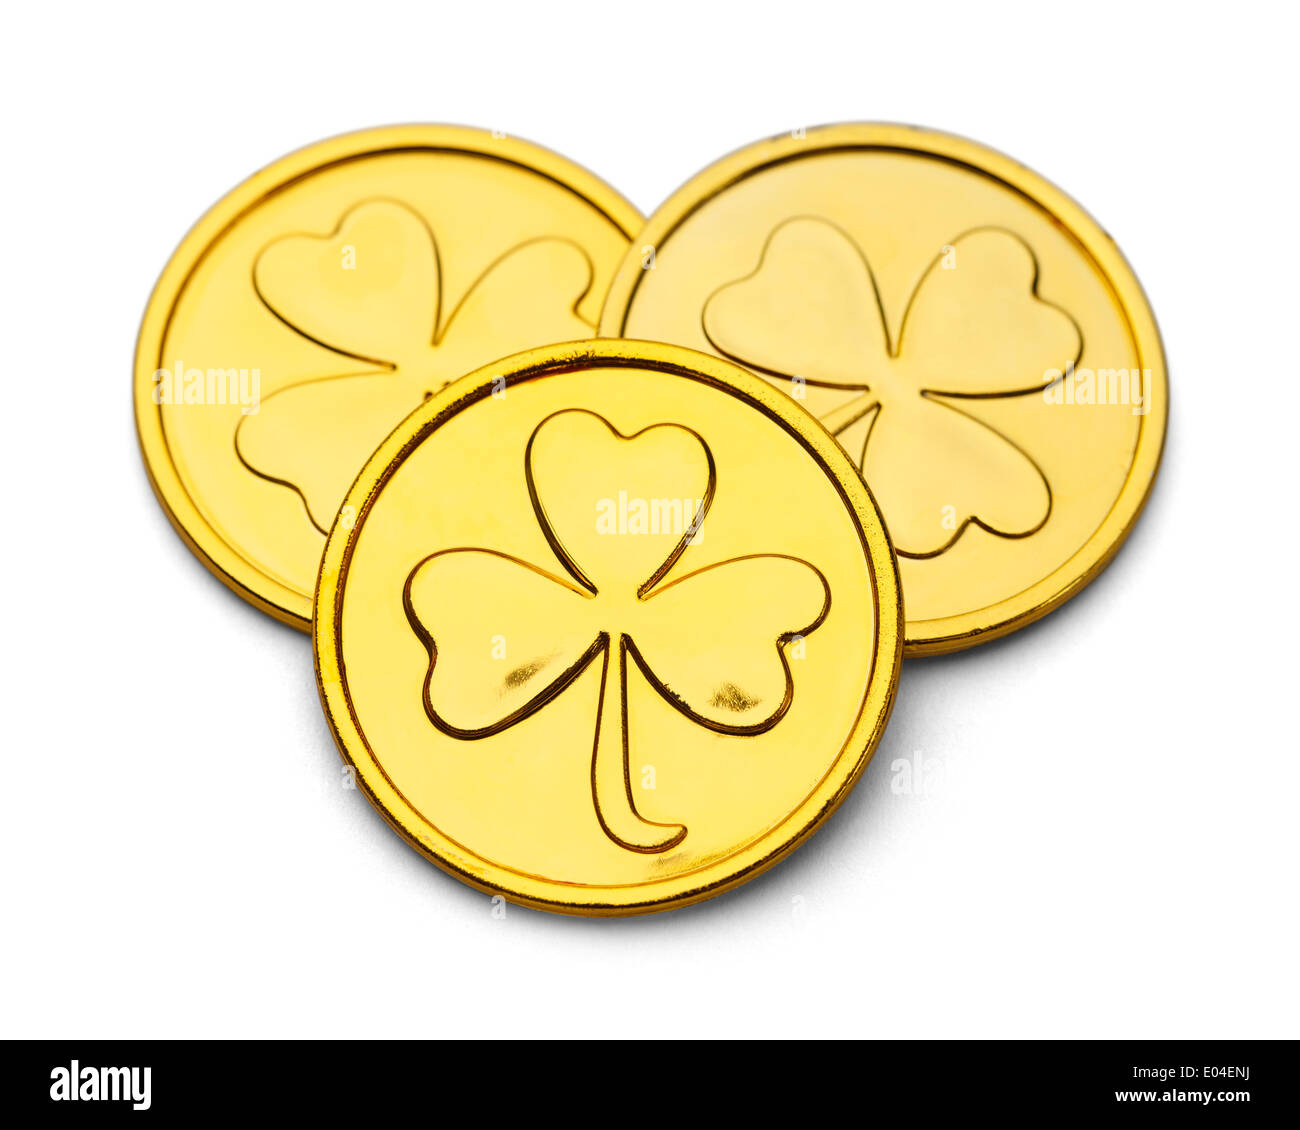 Drei Goldmünzen mit drei Leaf Clover Desgin, Isolated on White Background. Stockfoto